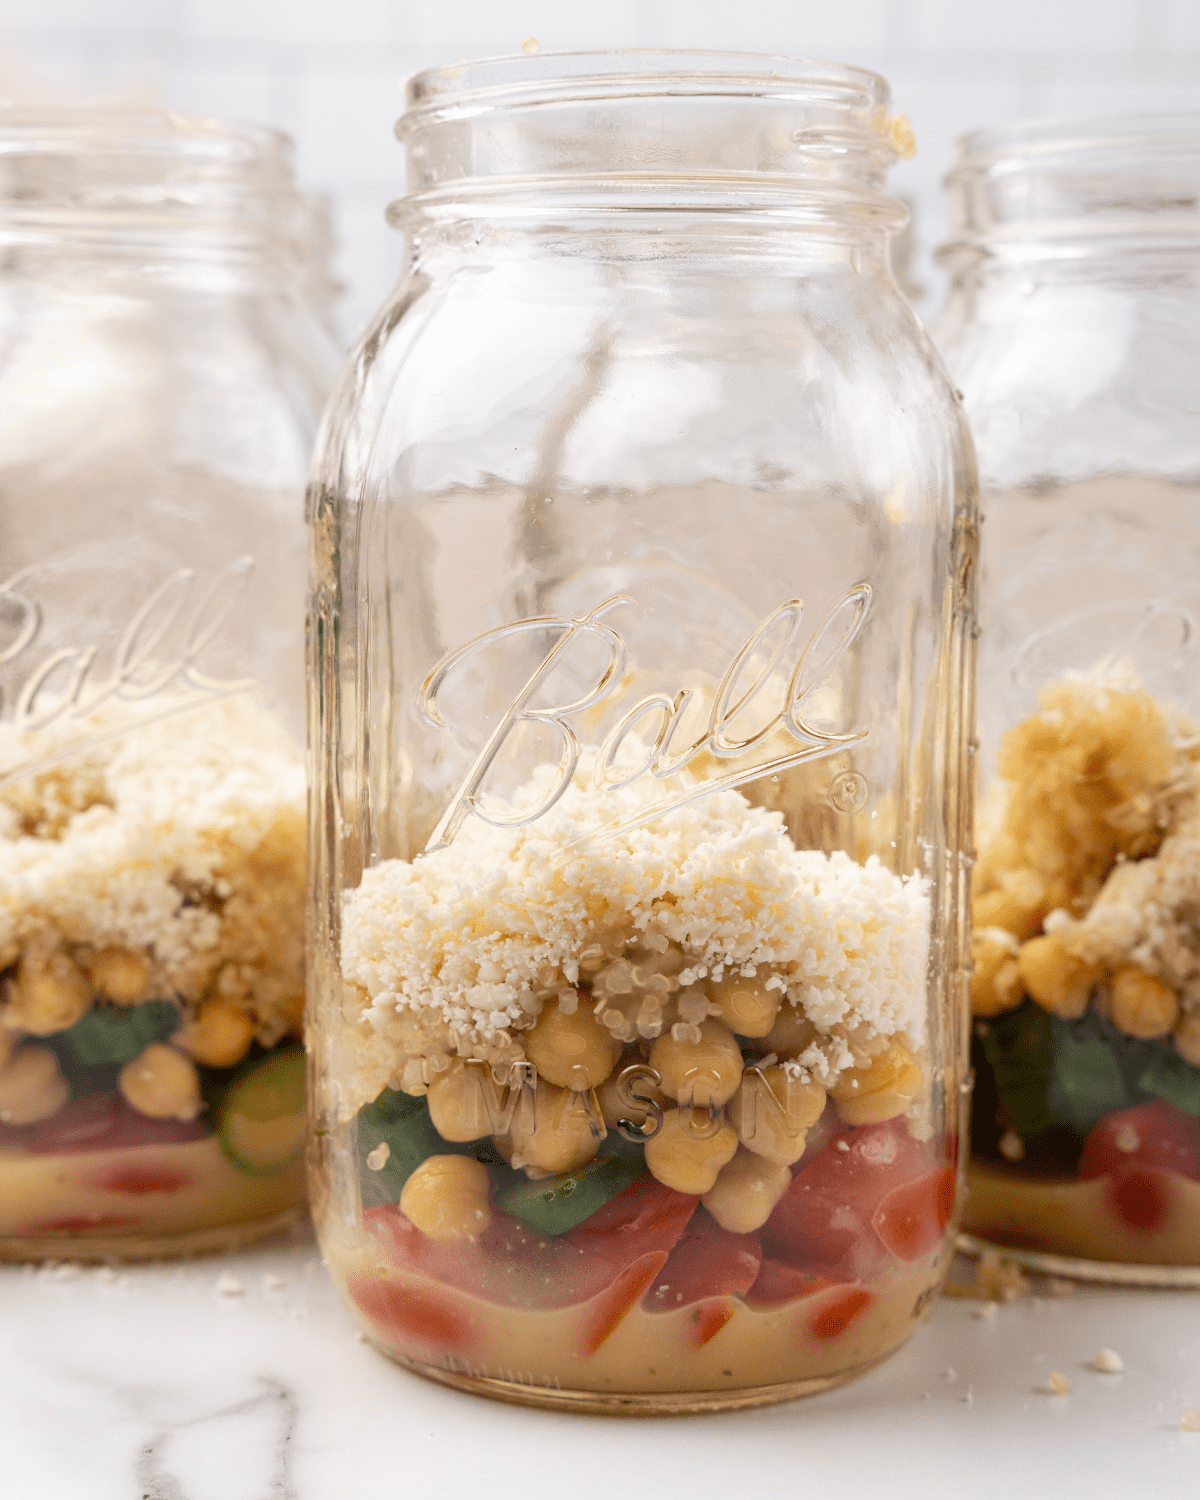 Easy Vegan High Protein Salad Jars - Modern Food Stories